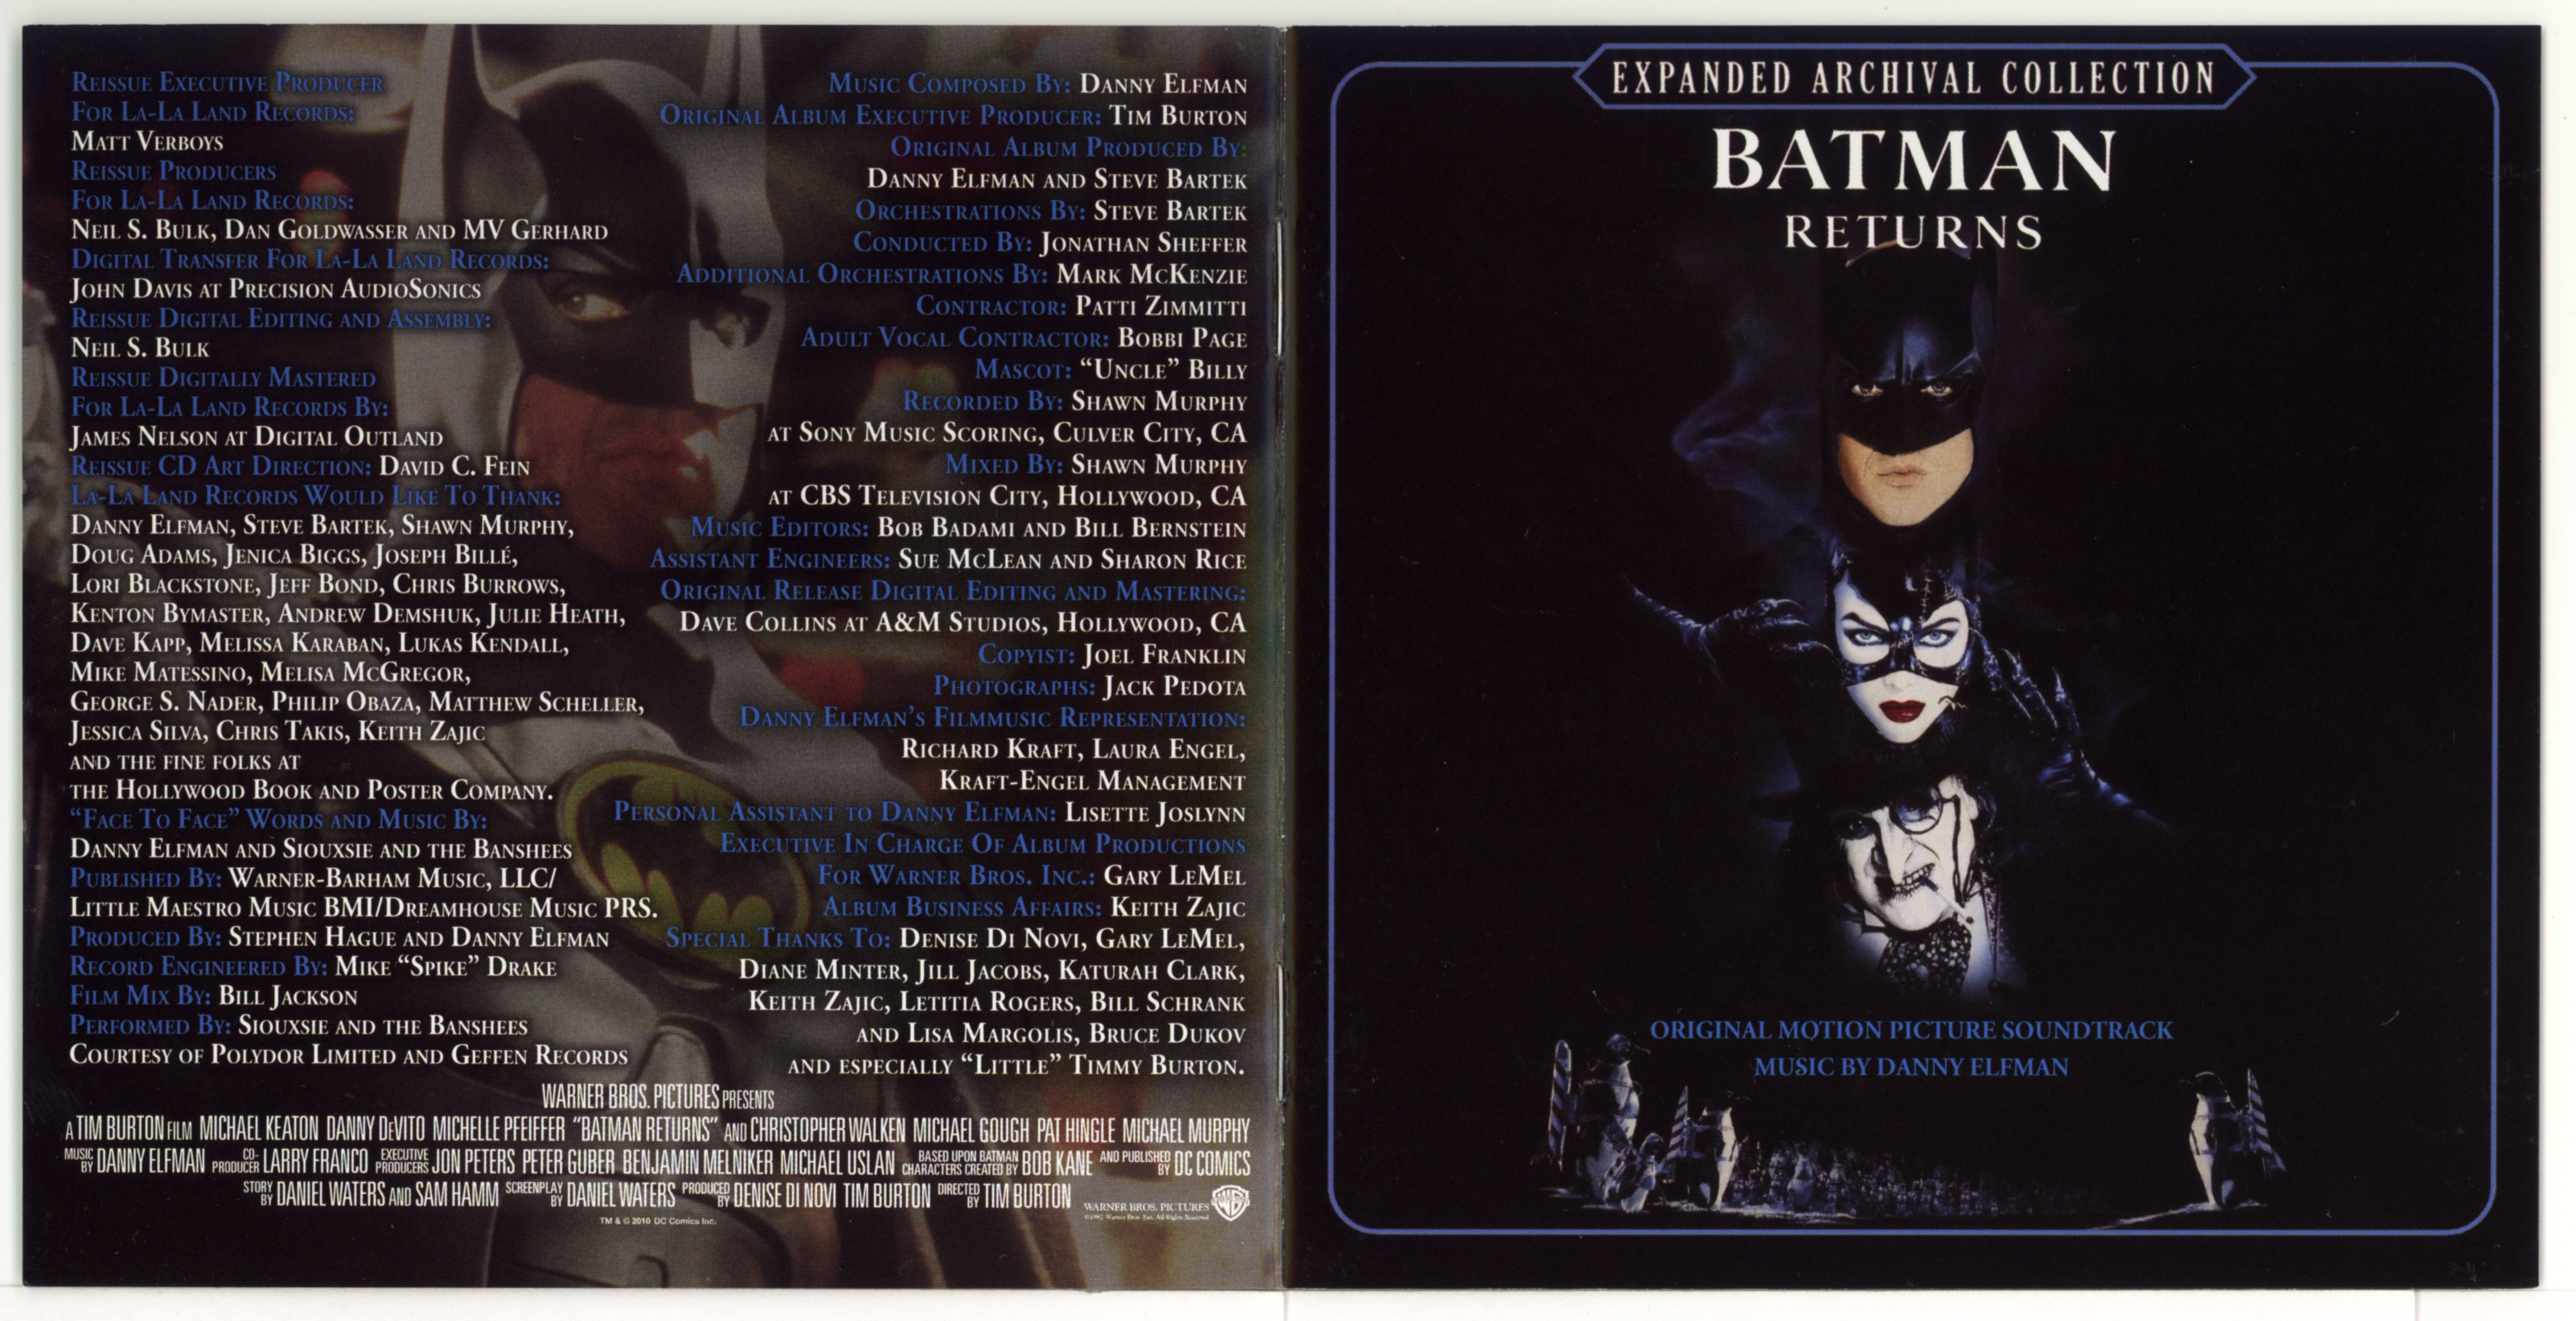 Release “Batman Returns: Original Motion Picture Soundtrack” by Danny  Elfman - Cover Art - MusicBrainz